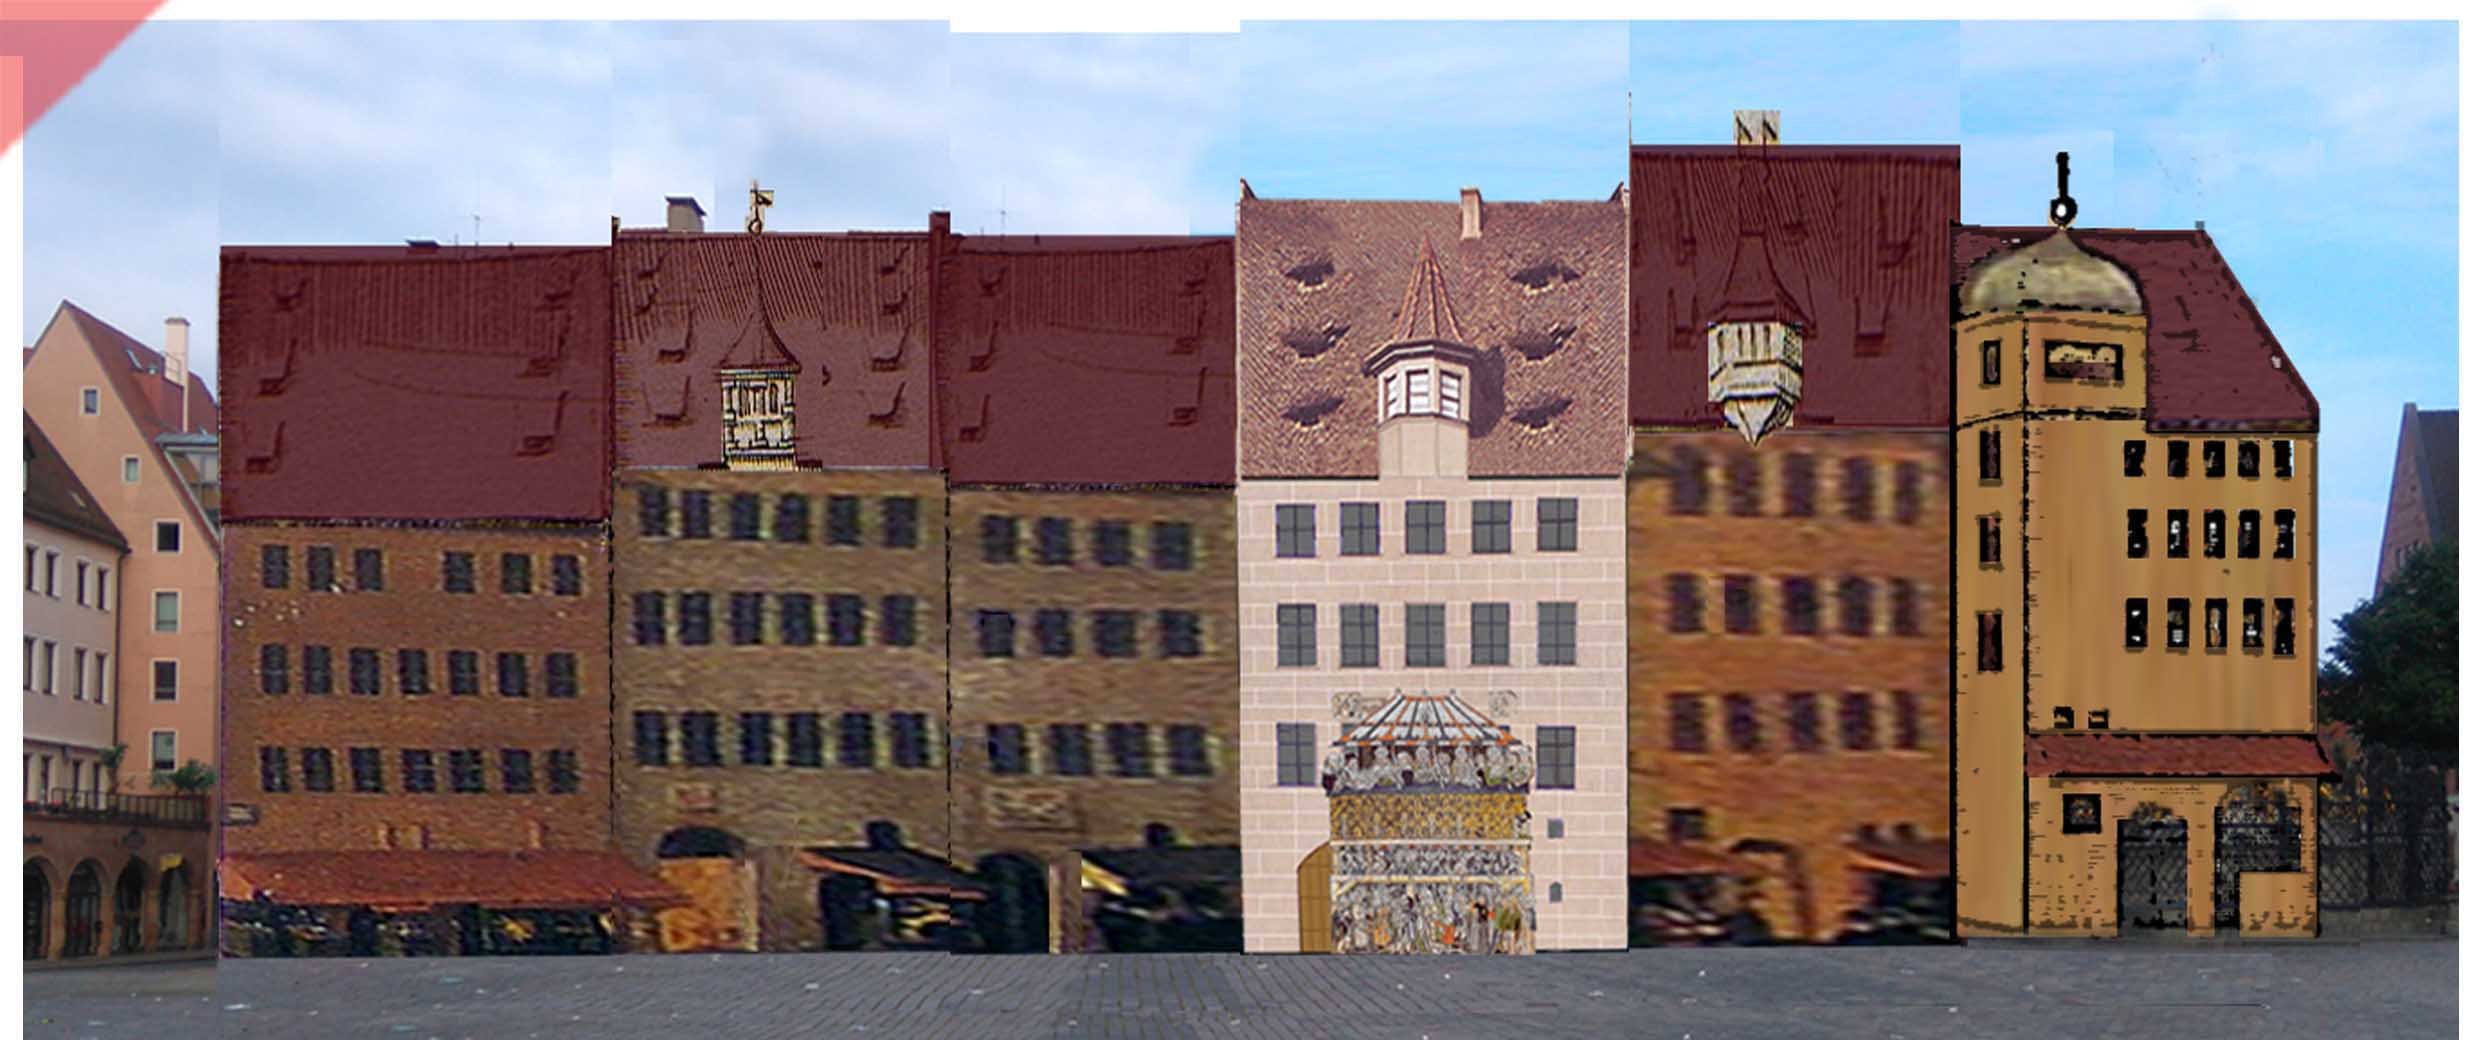 Heiltumsweisung-Nürnberg-Hauptmarkt-15-Schopper-Behaim-1424-1523-Rekonstruktion-Gebäude-3-Gebäudefront-Westseite-Panorama